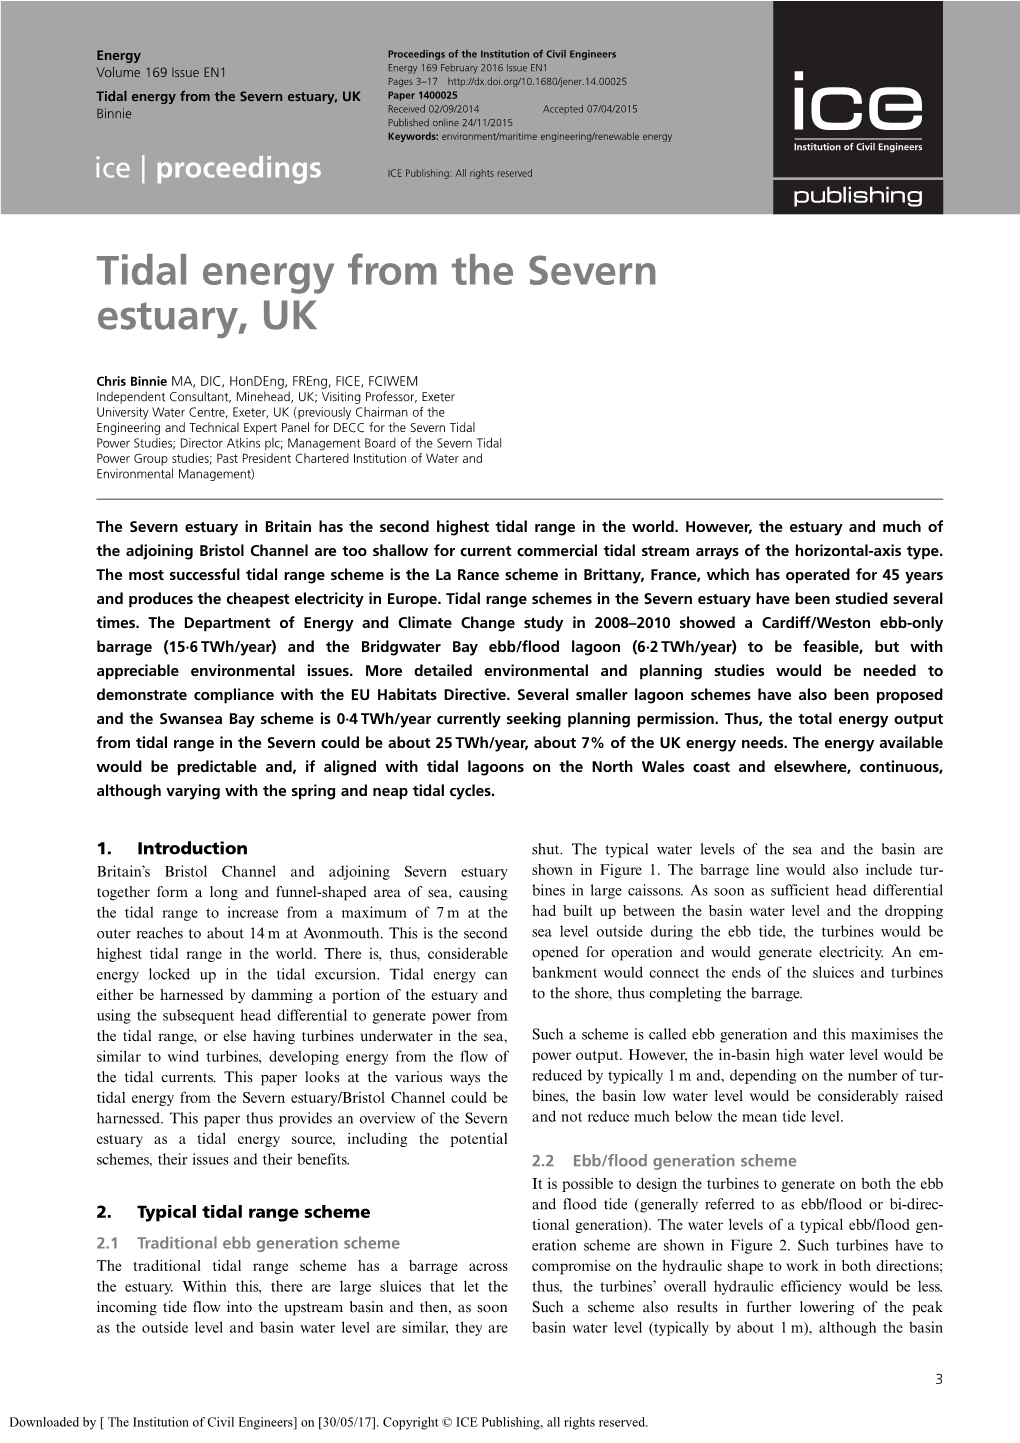 Tidal Energy from the Severn Estuary, UK